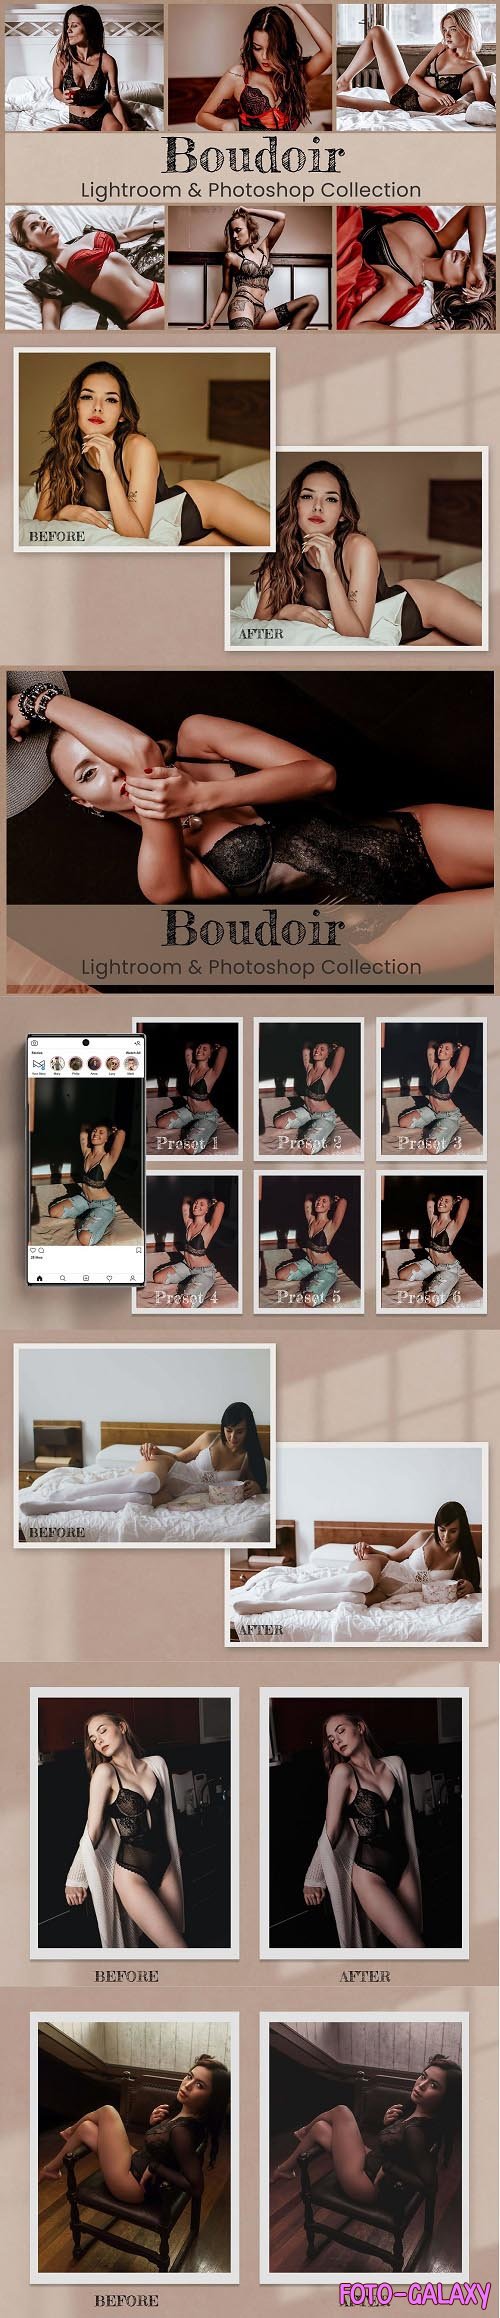 Boudoir Lightroom Photoshop ACR LUTs - 6450218